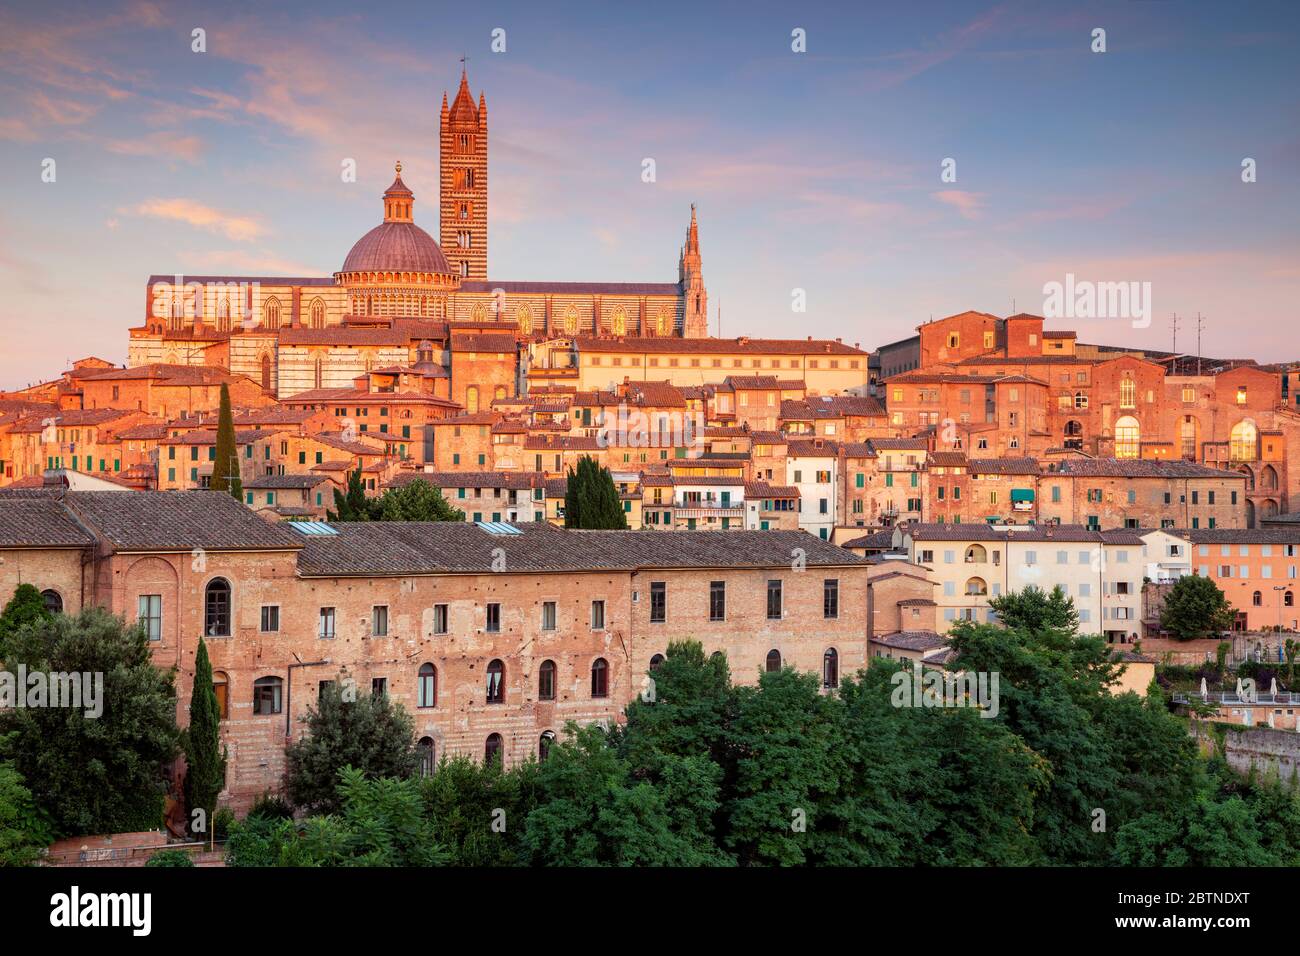 Siena. Luftbild der mittelalterlichen Stadt Siena, Italien bei Sonnenuntergang. Stockfoto